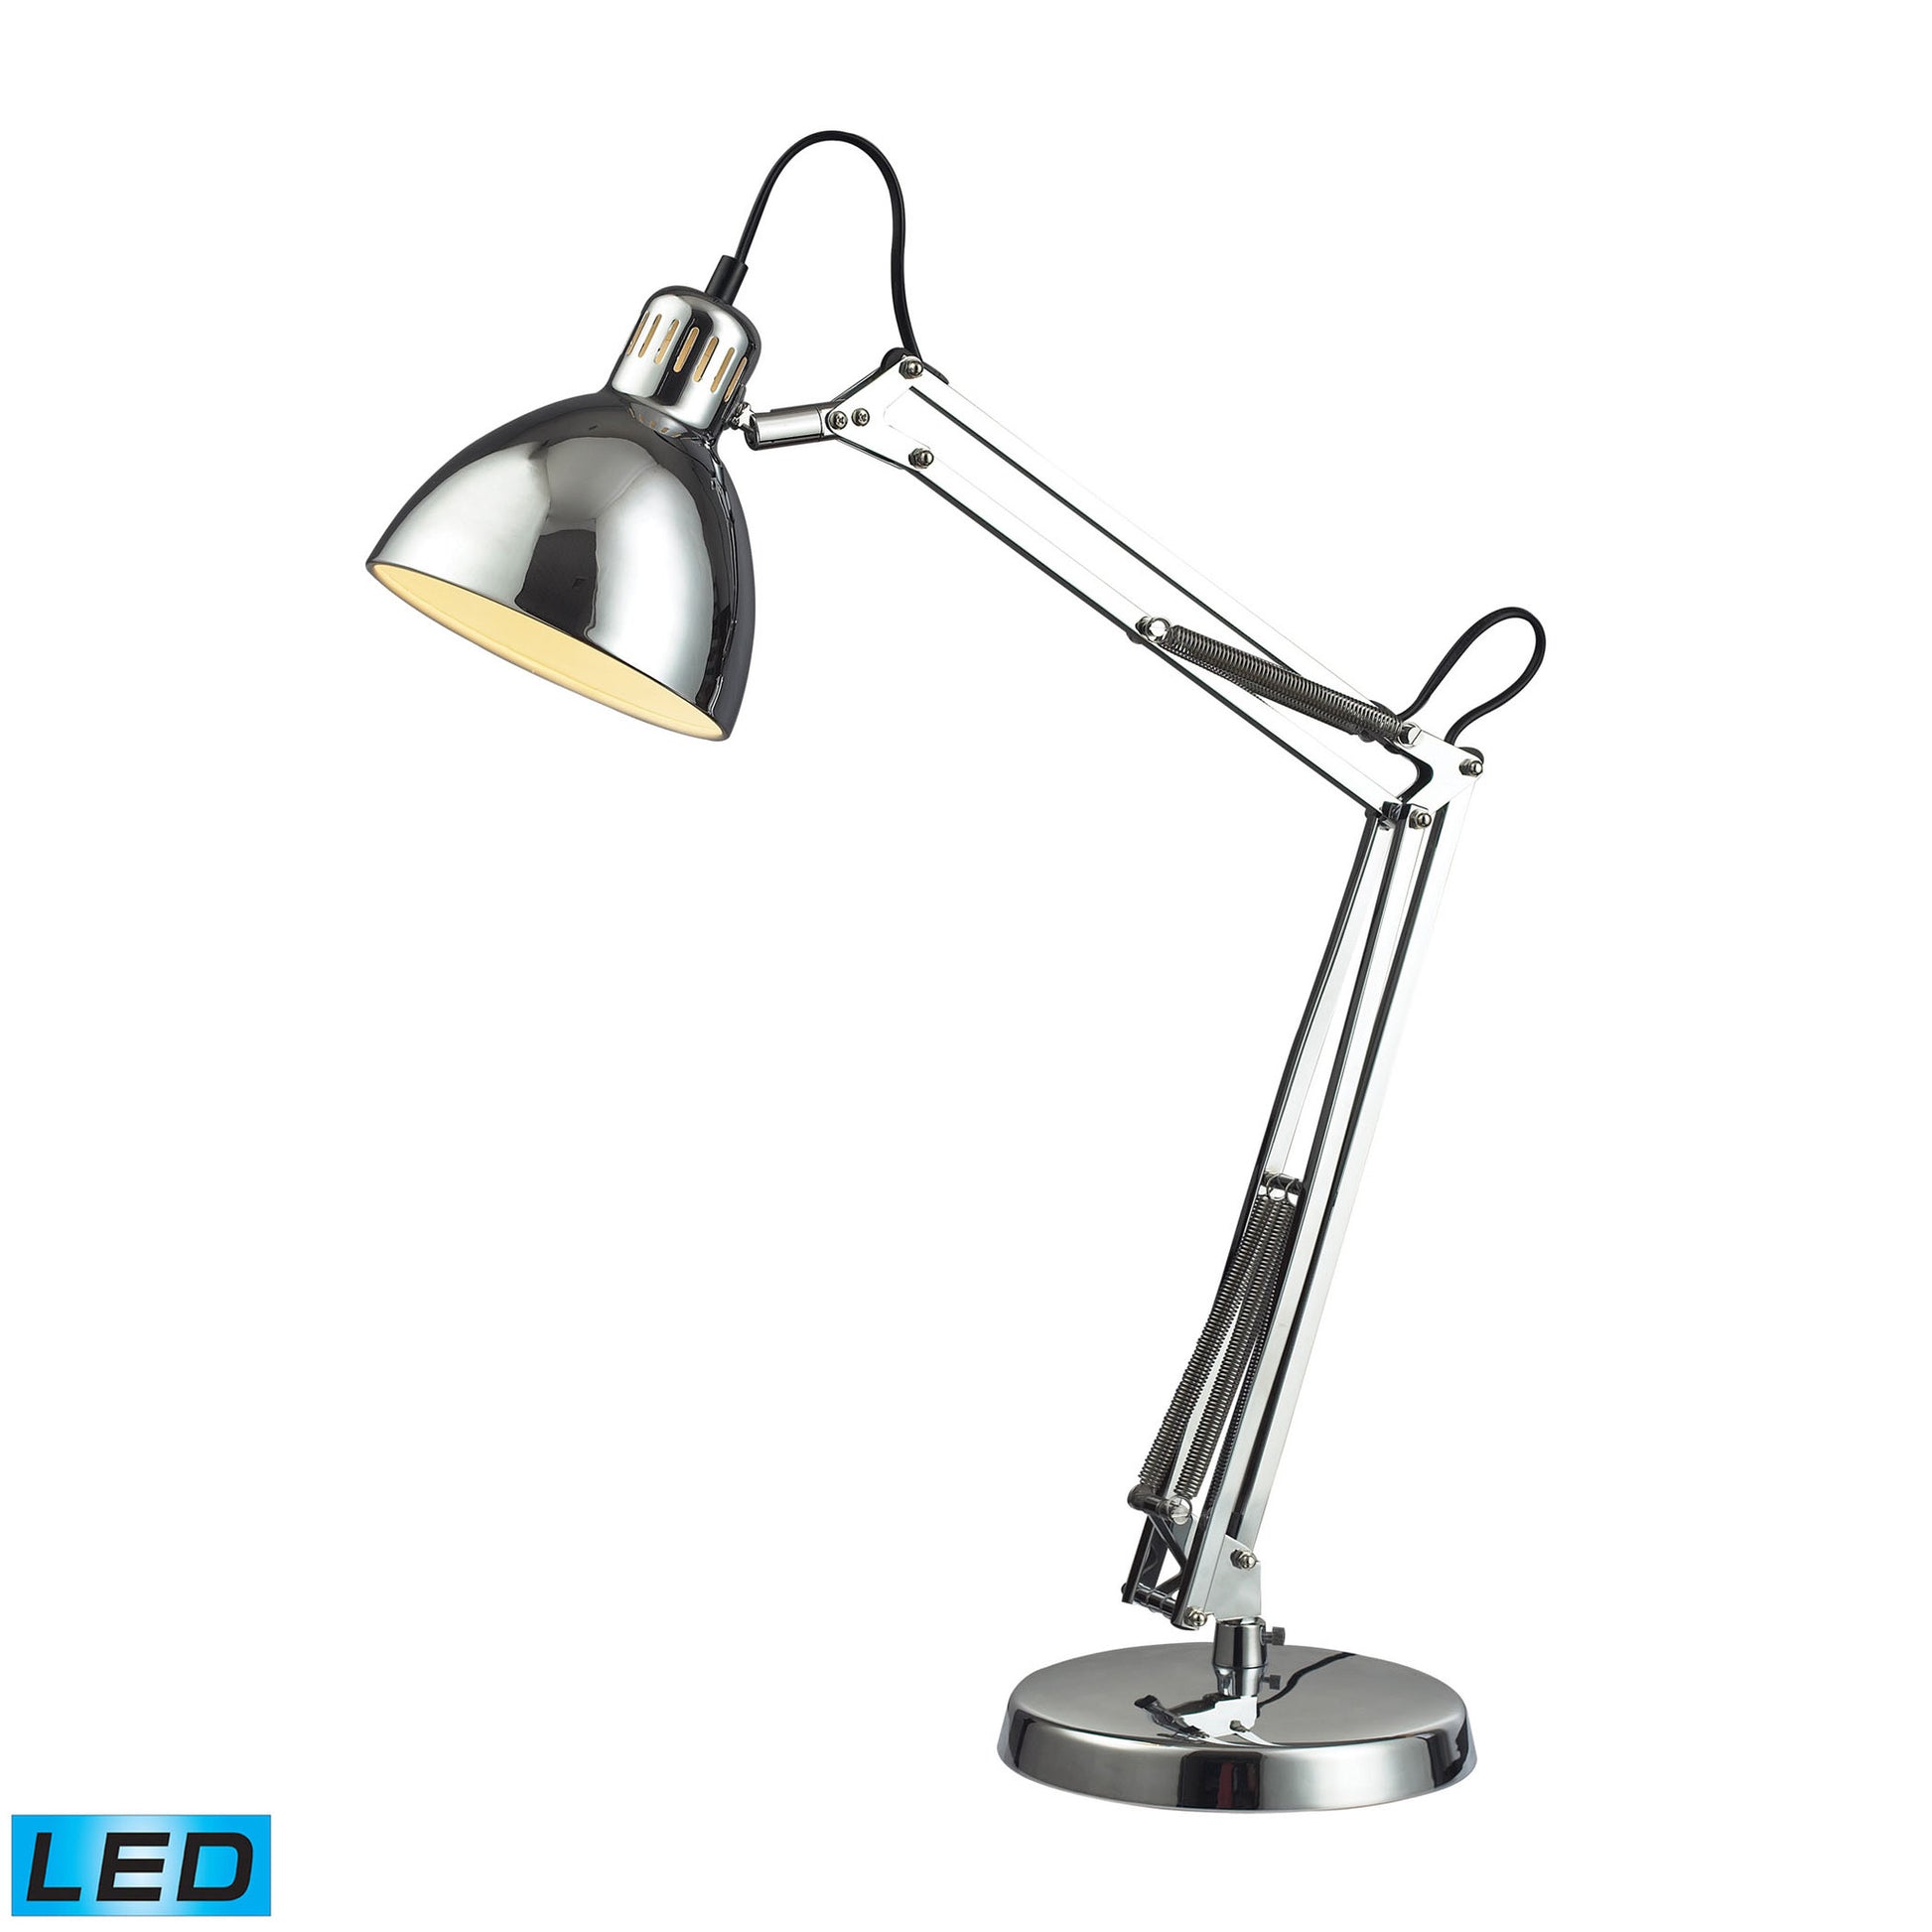 Dimond Lighting Ingelside Desk Lamp In Chrome With Chrome Shade | Modishstore | Desk Lamps